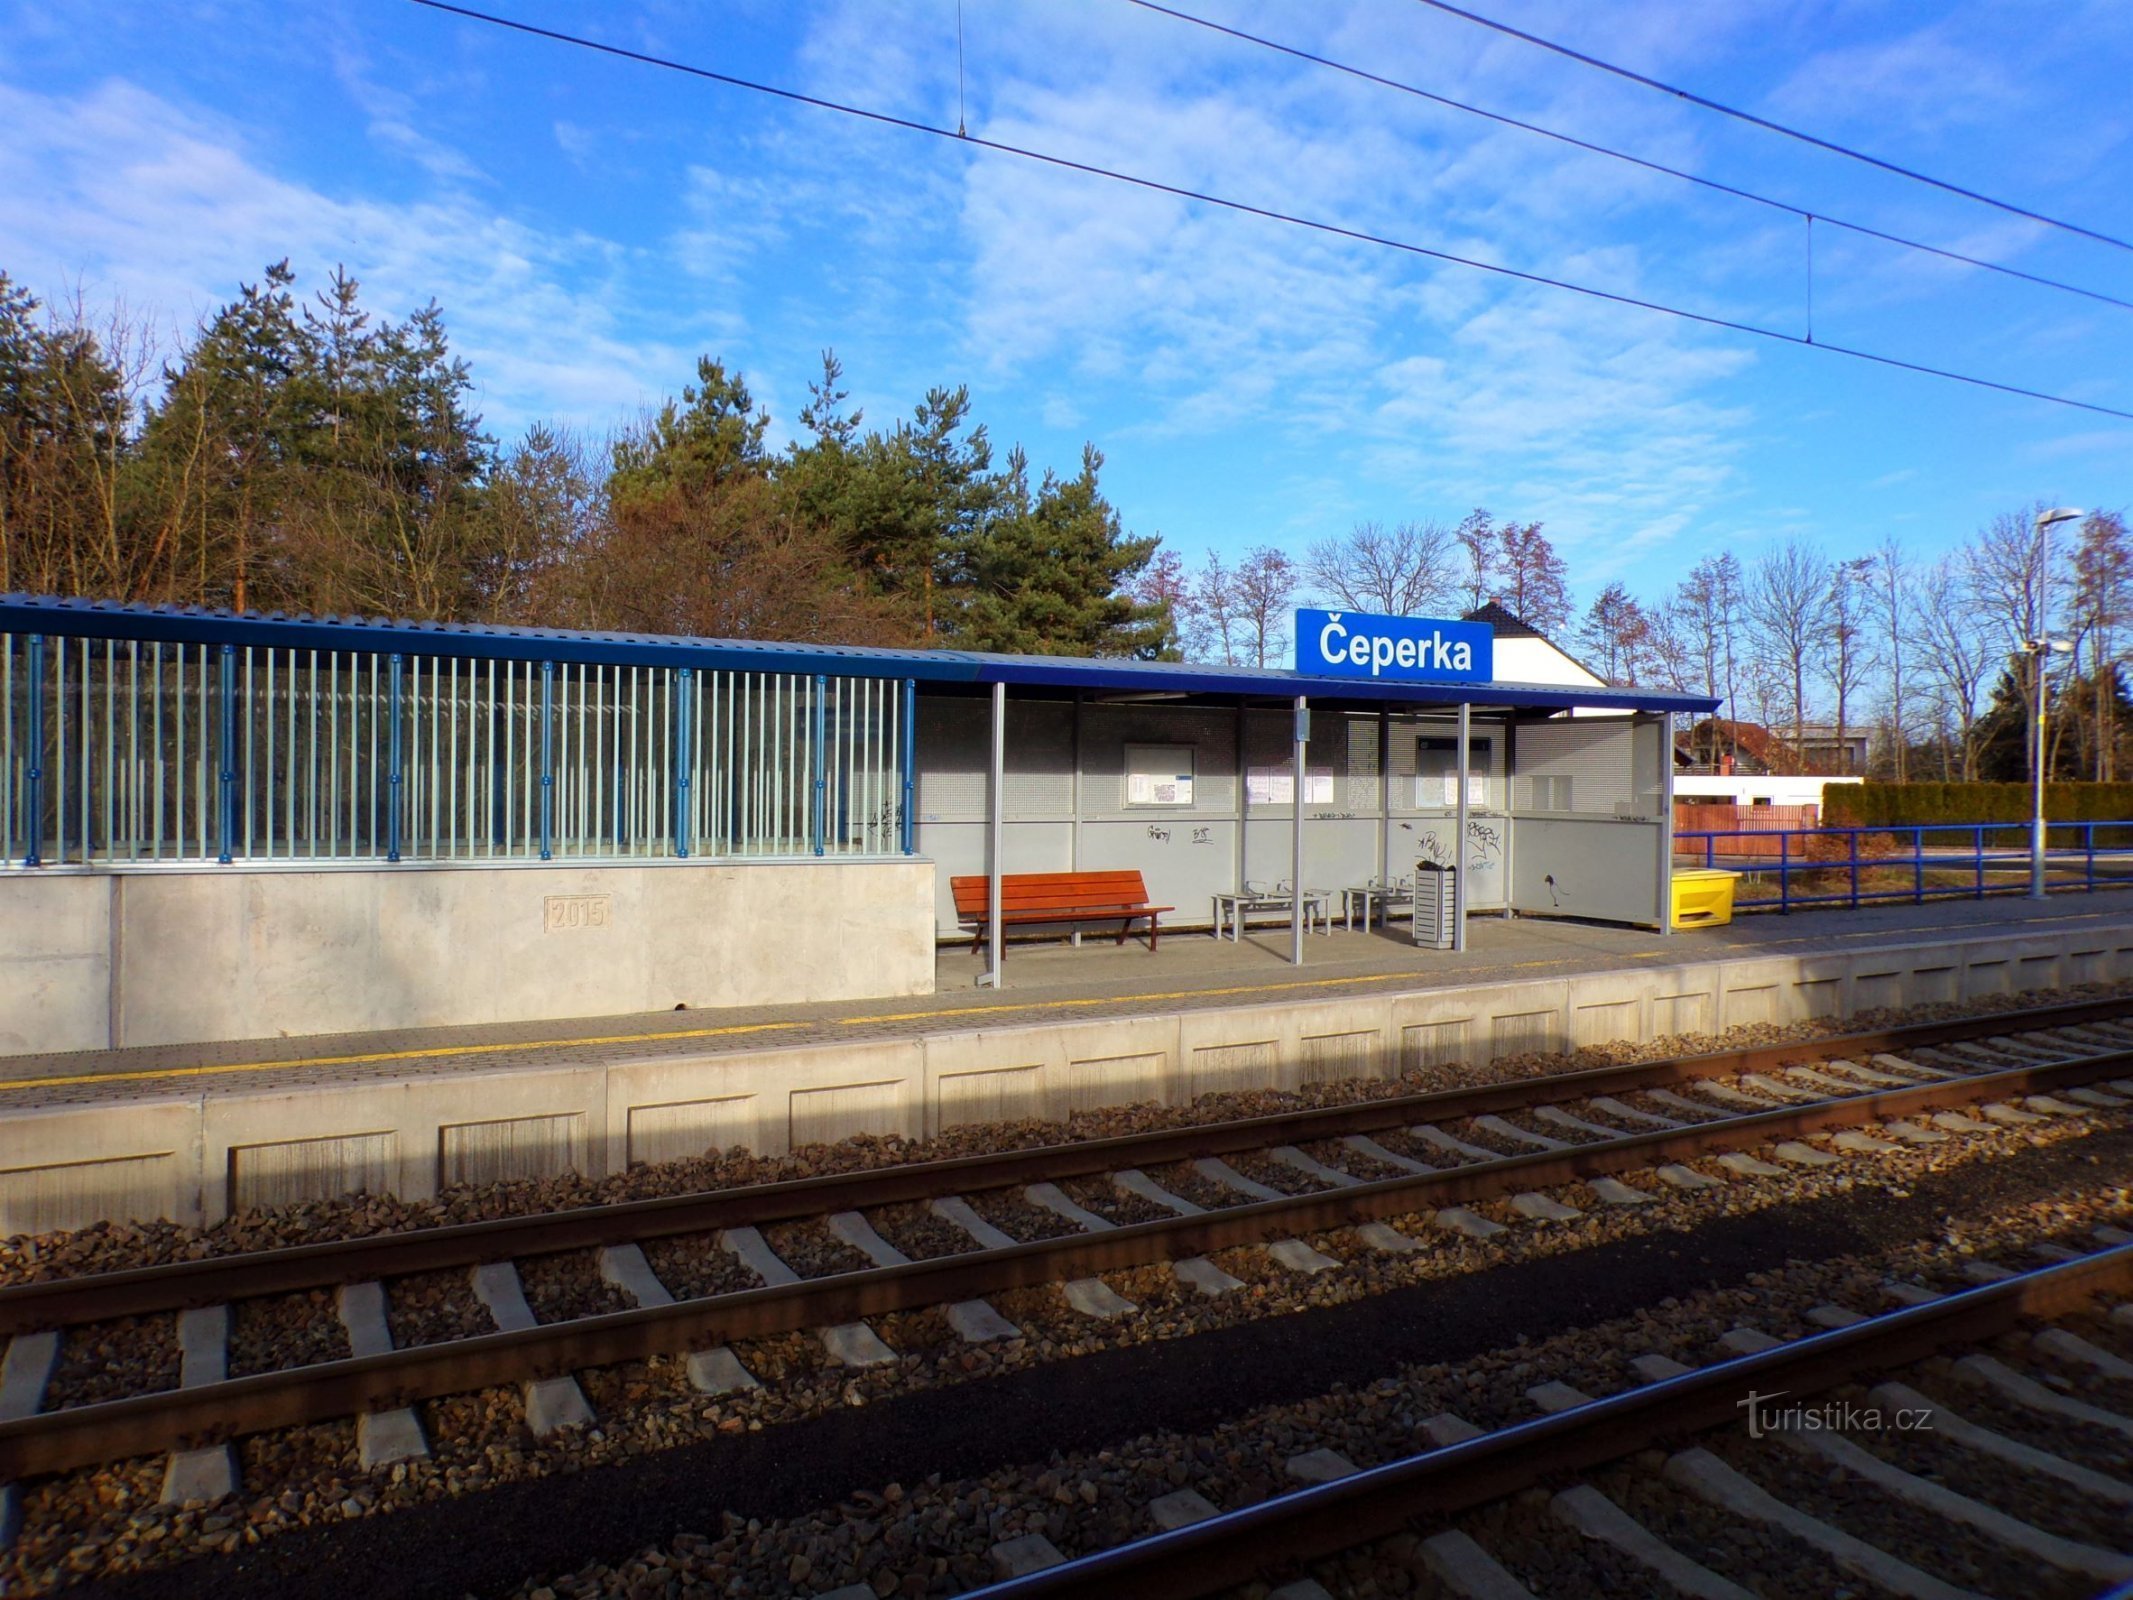 Gare (Čeperka, 18.2.2022/XNUMX/XNUMX)